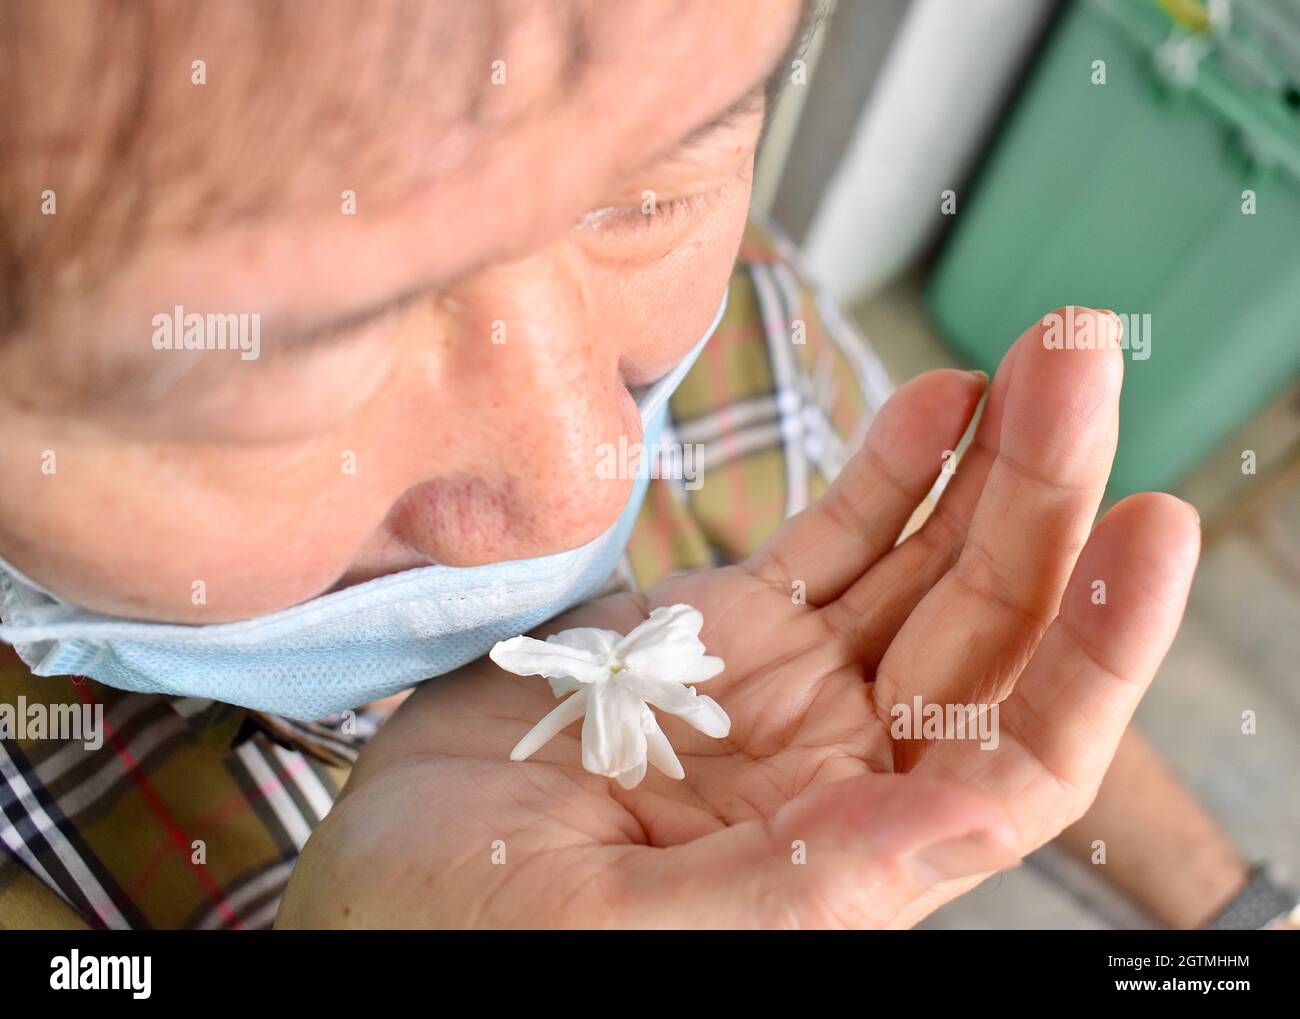 Südostasiatischer, chinesischer und myanmarischer alter Mann mit kalter Grippe bekommt Geruchverlust, genannt Anosmie. Er riecht nach Jasminblüte Stockfoto